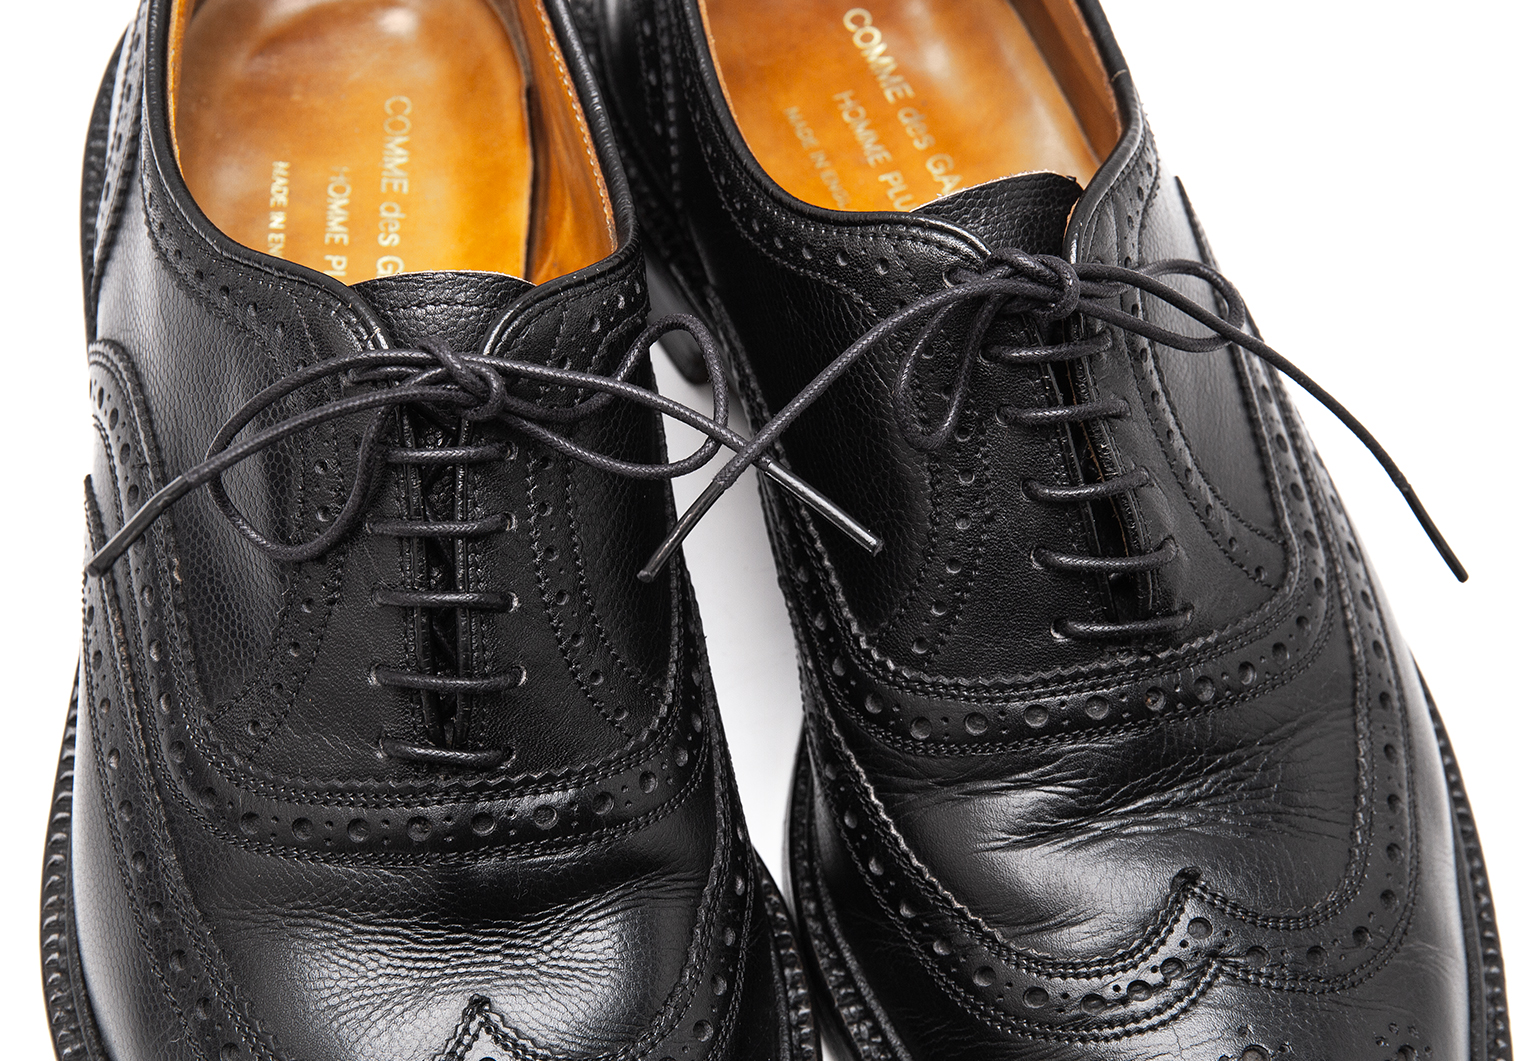 コムデギャルソンオムプリュス 革靴 ブラック写真をご覧下さいませ